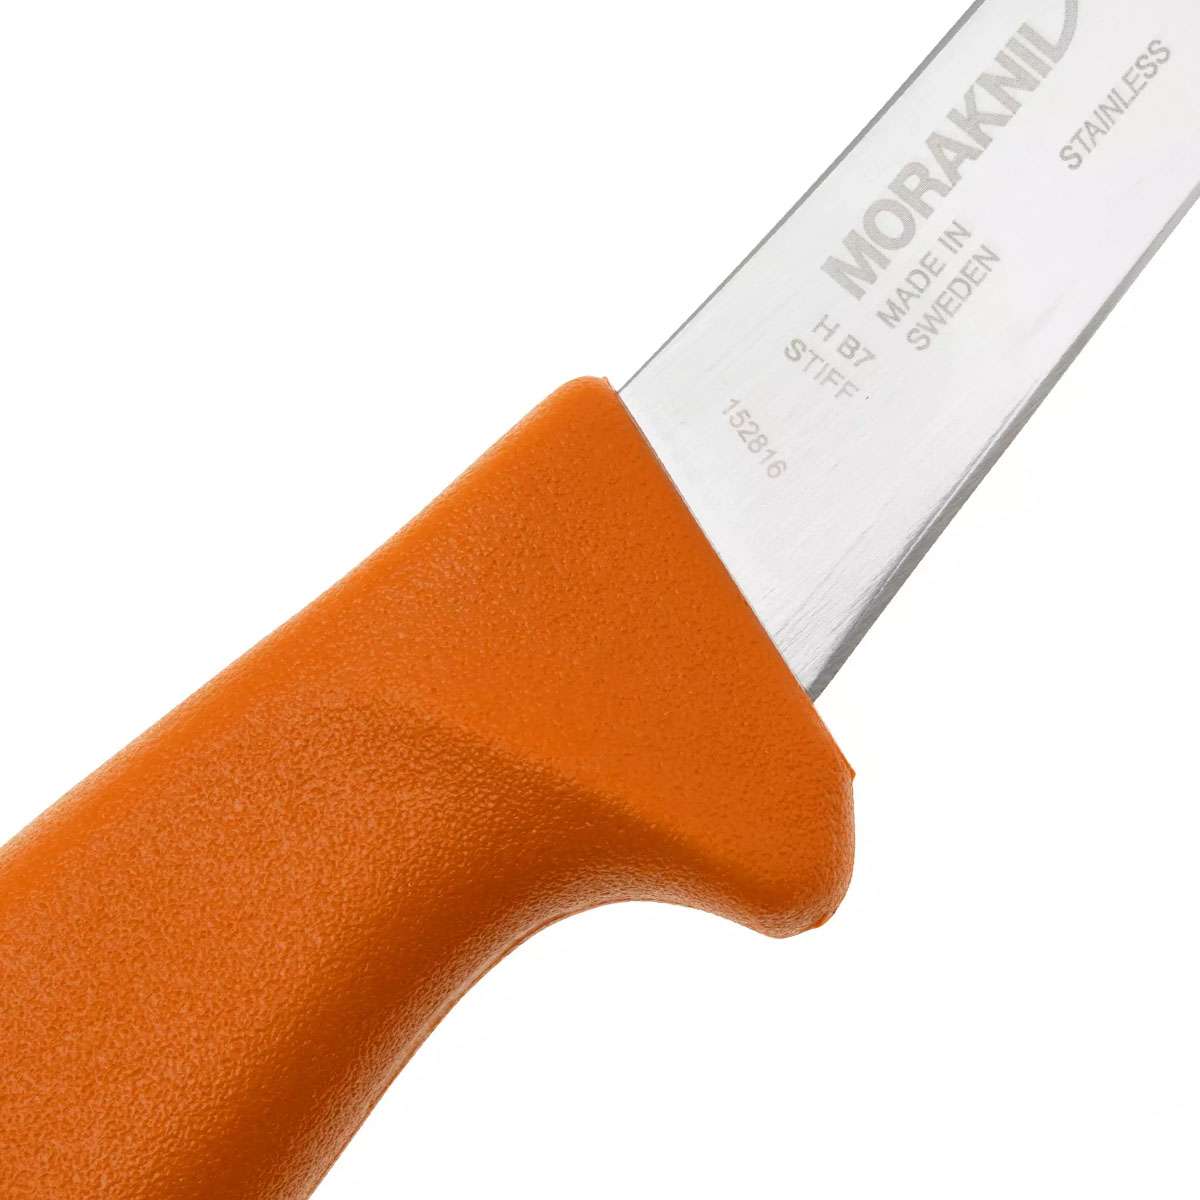 Morakniv Hunting Butcher (S) Knife Olive Green & Burnt Orange 14233